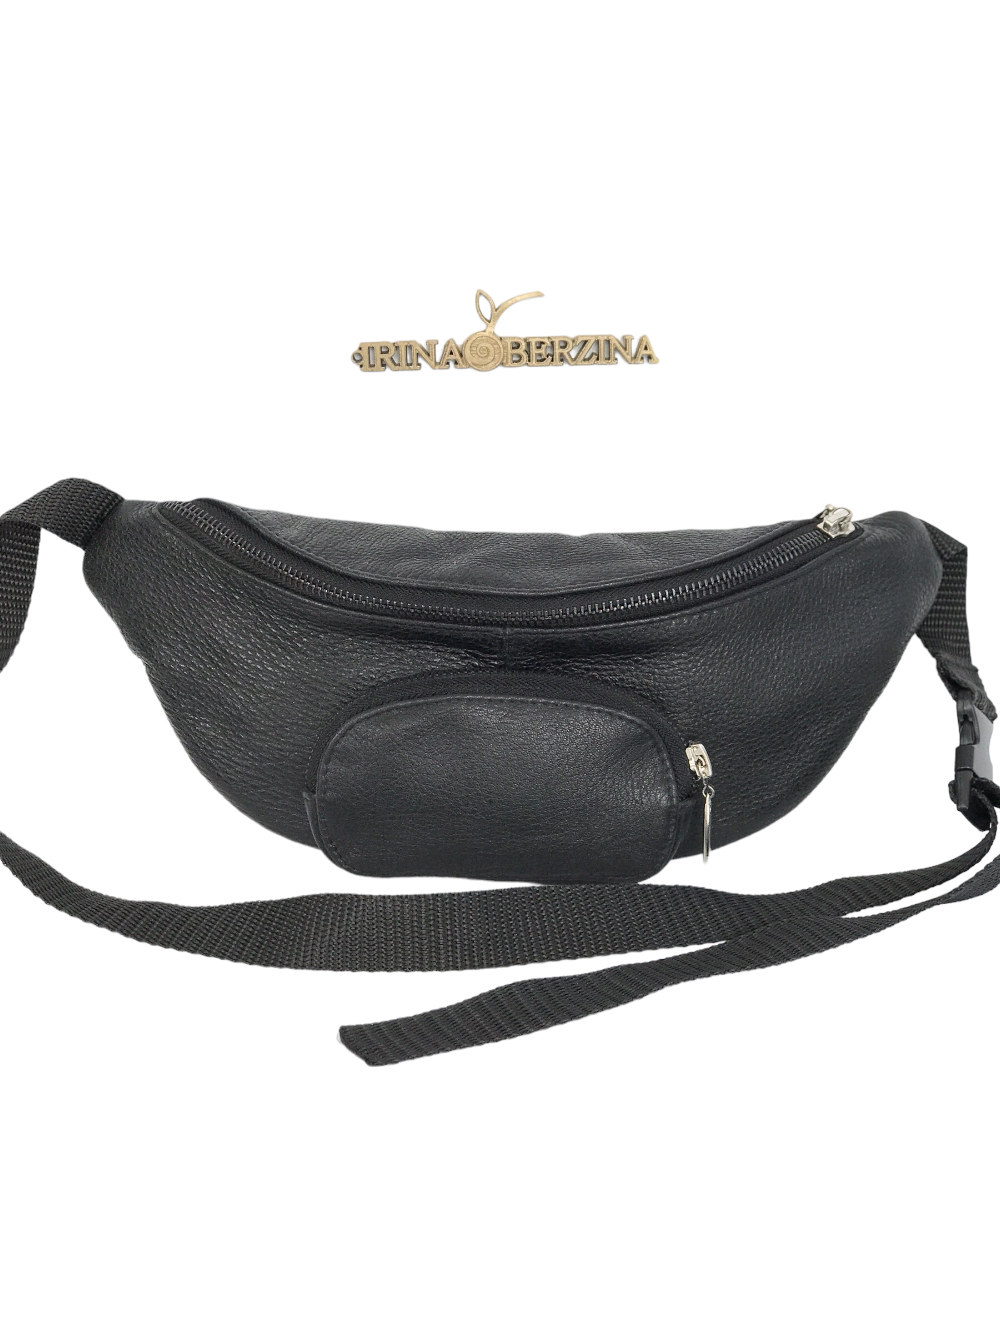 картинка кожаные  Поясная сумка-01 - Кожаная сумка черный флотер, унисекс от Ирины Берзиной